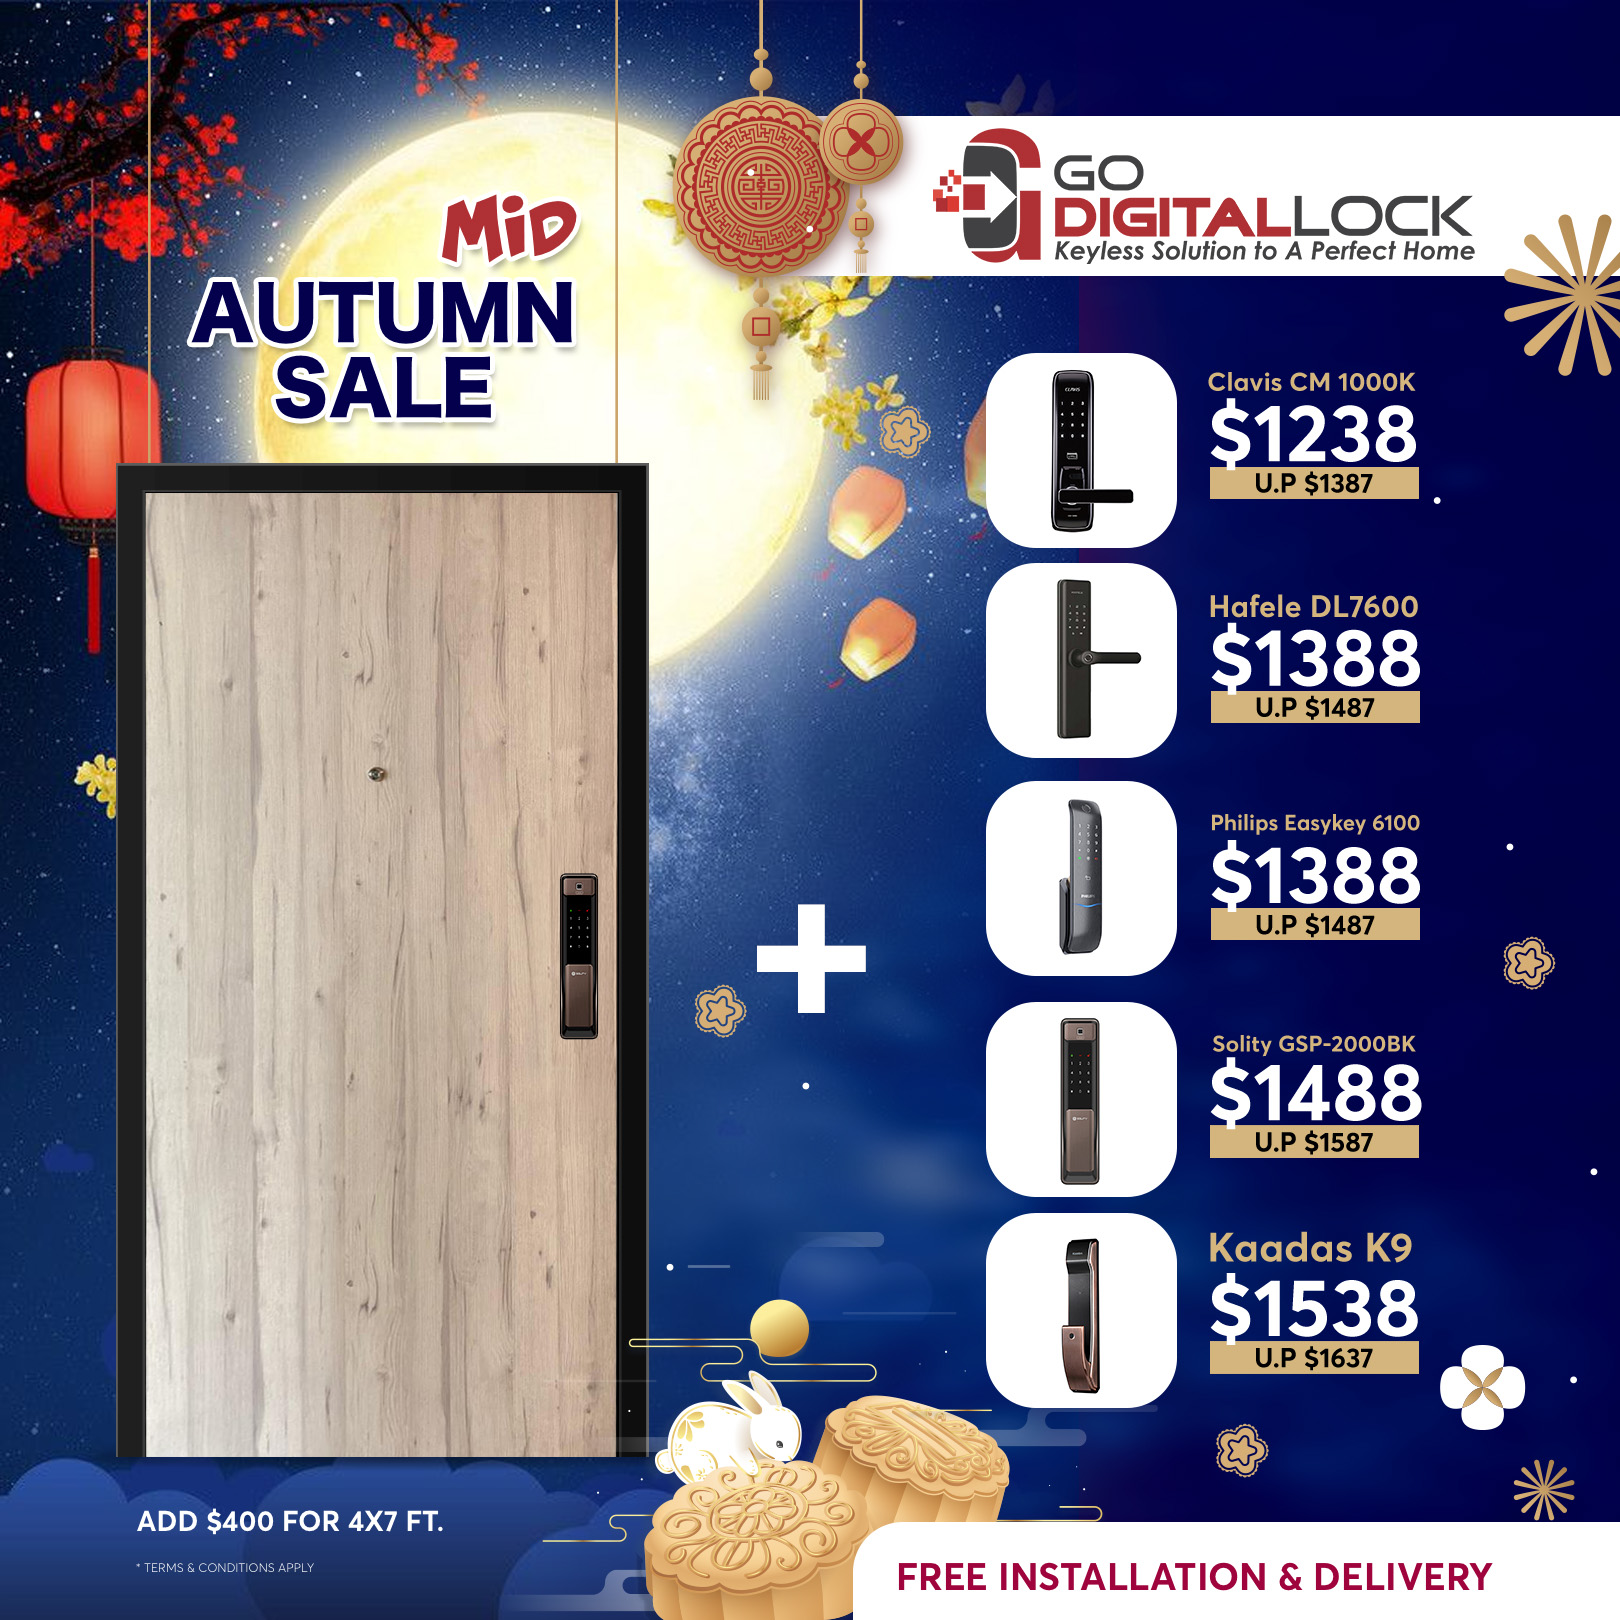 Mid Autumn Door & Digital Lock Bundle Promo 2021, Online Event